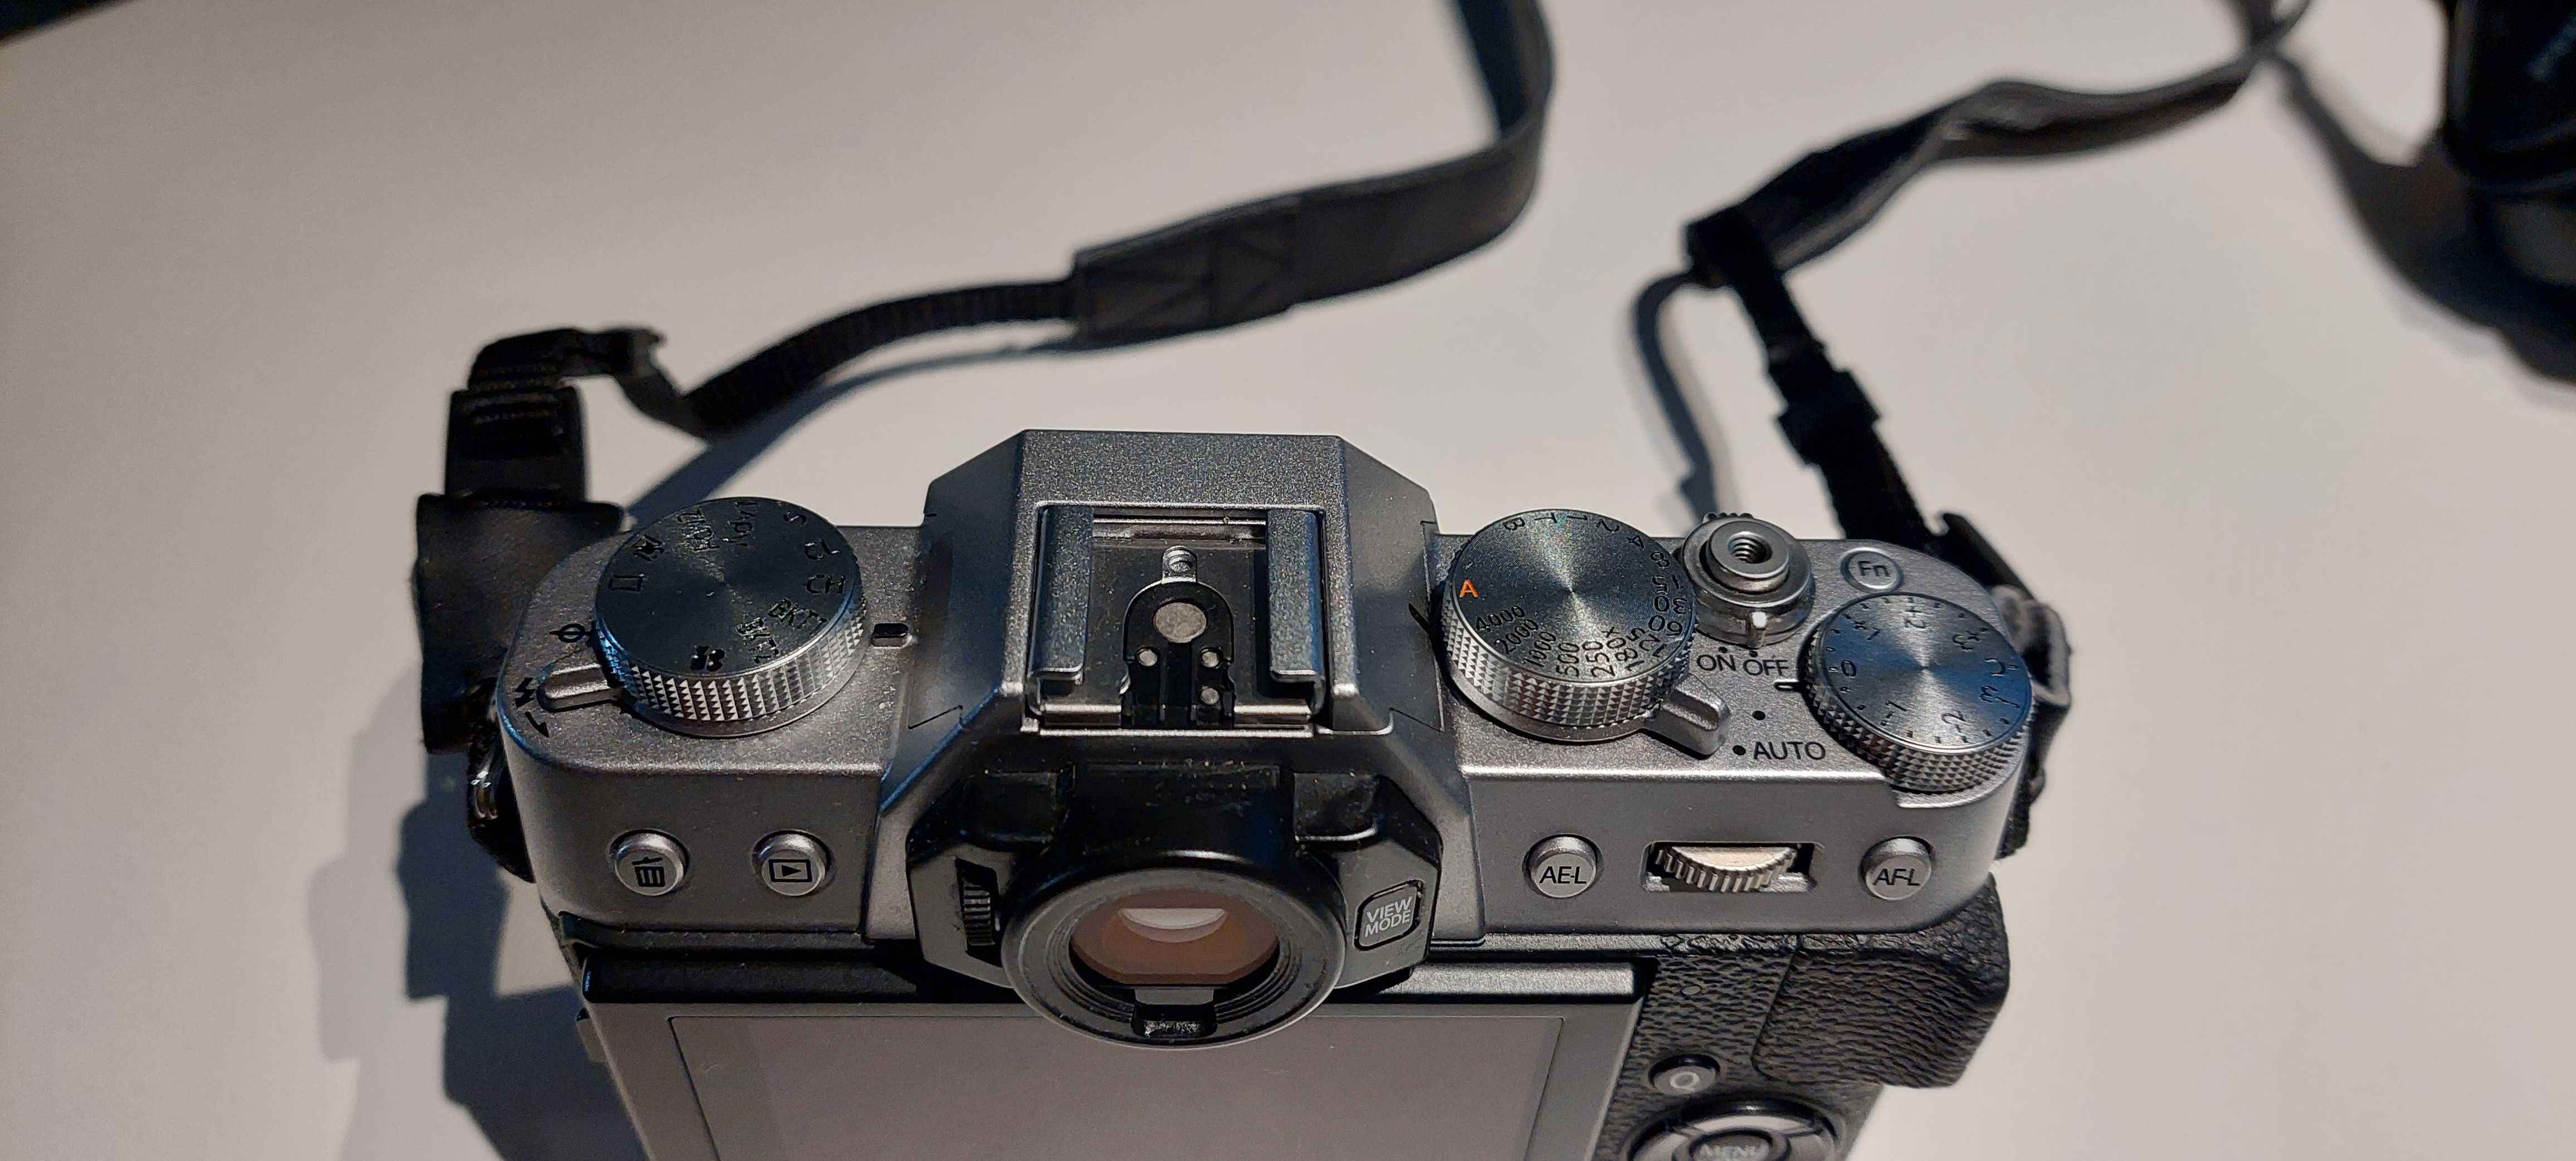 Aparat fotograficzny Fujifilm XT-20 - body